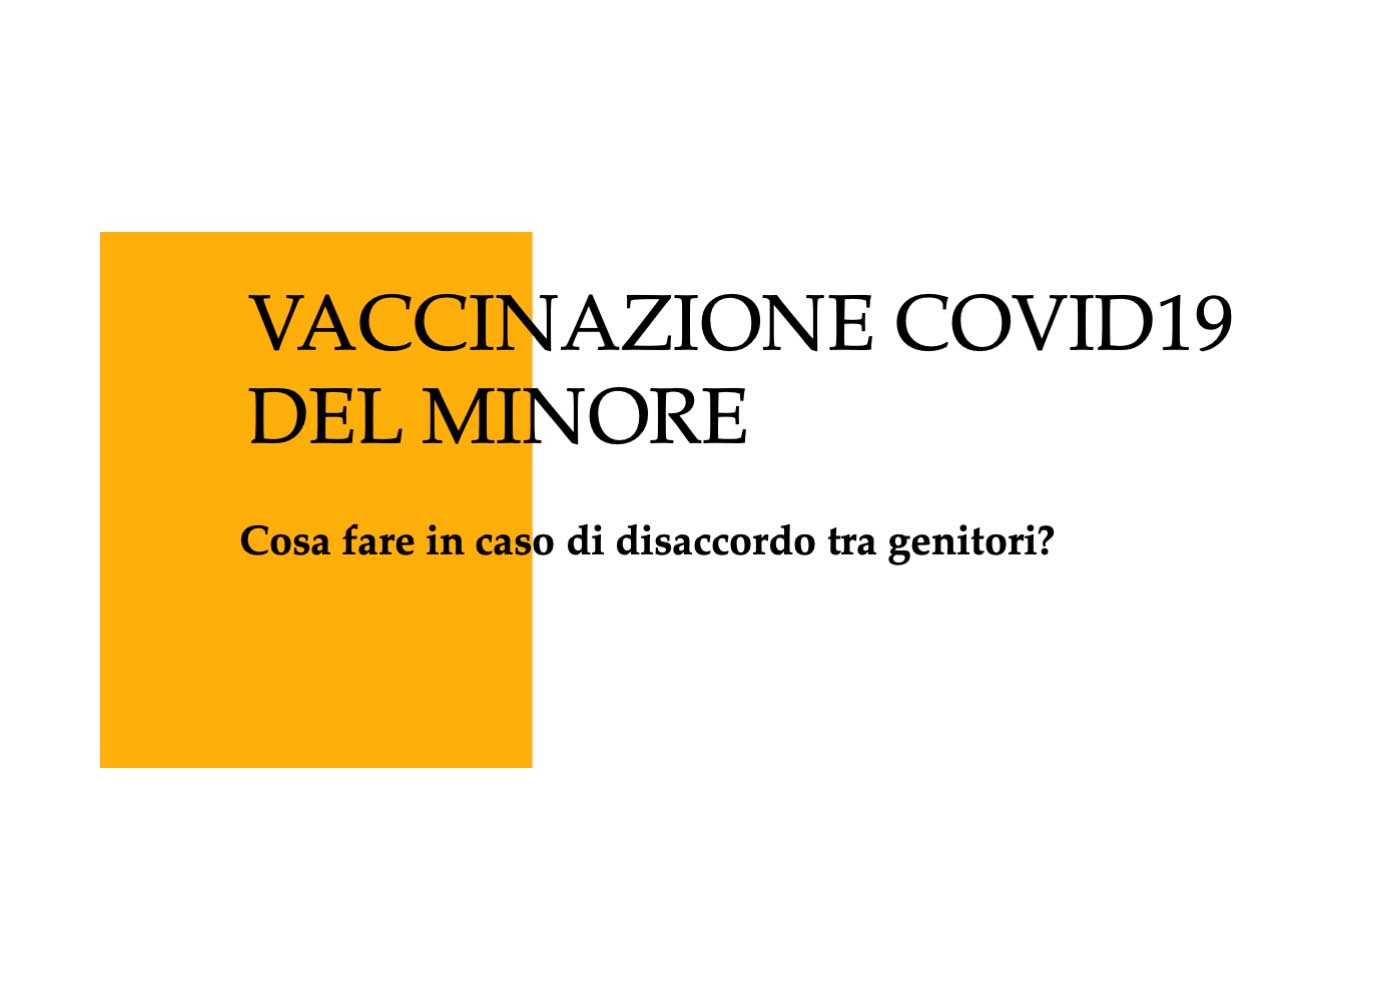 Vaccinazione Covid19 del minore - Cosa fare in caso di disaccordo tra genitori?